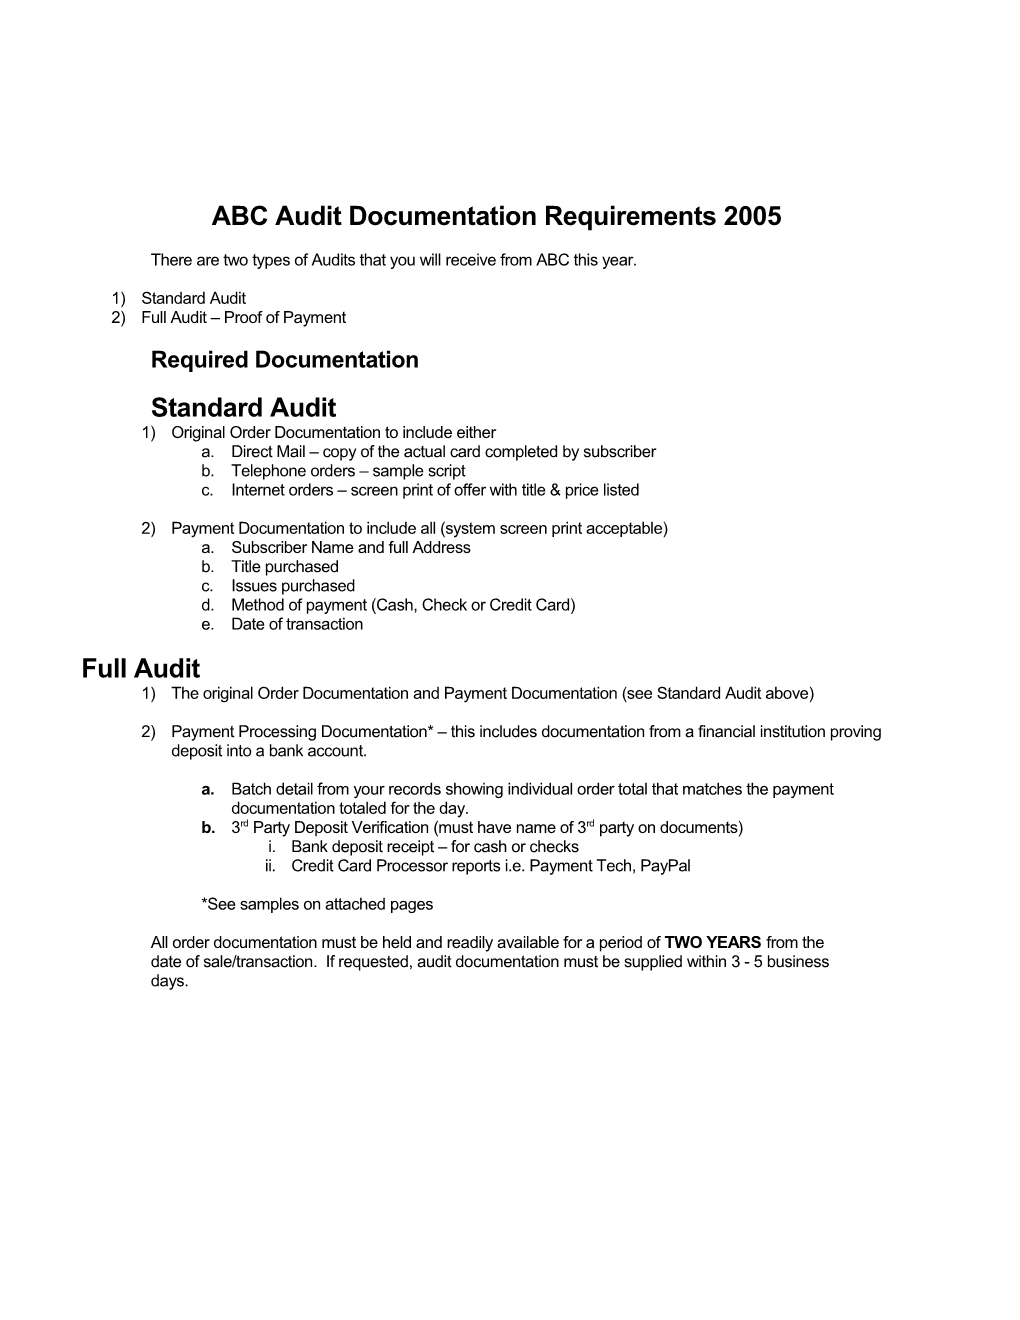 ABC Audit Requirements